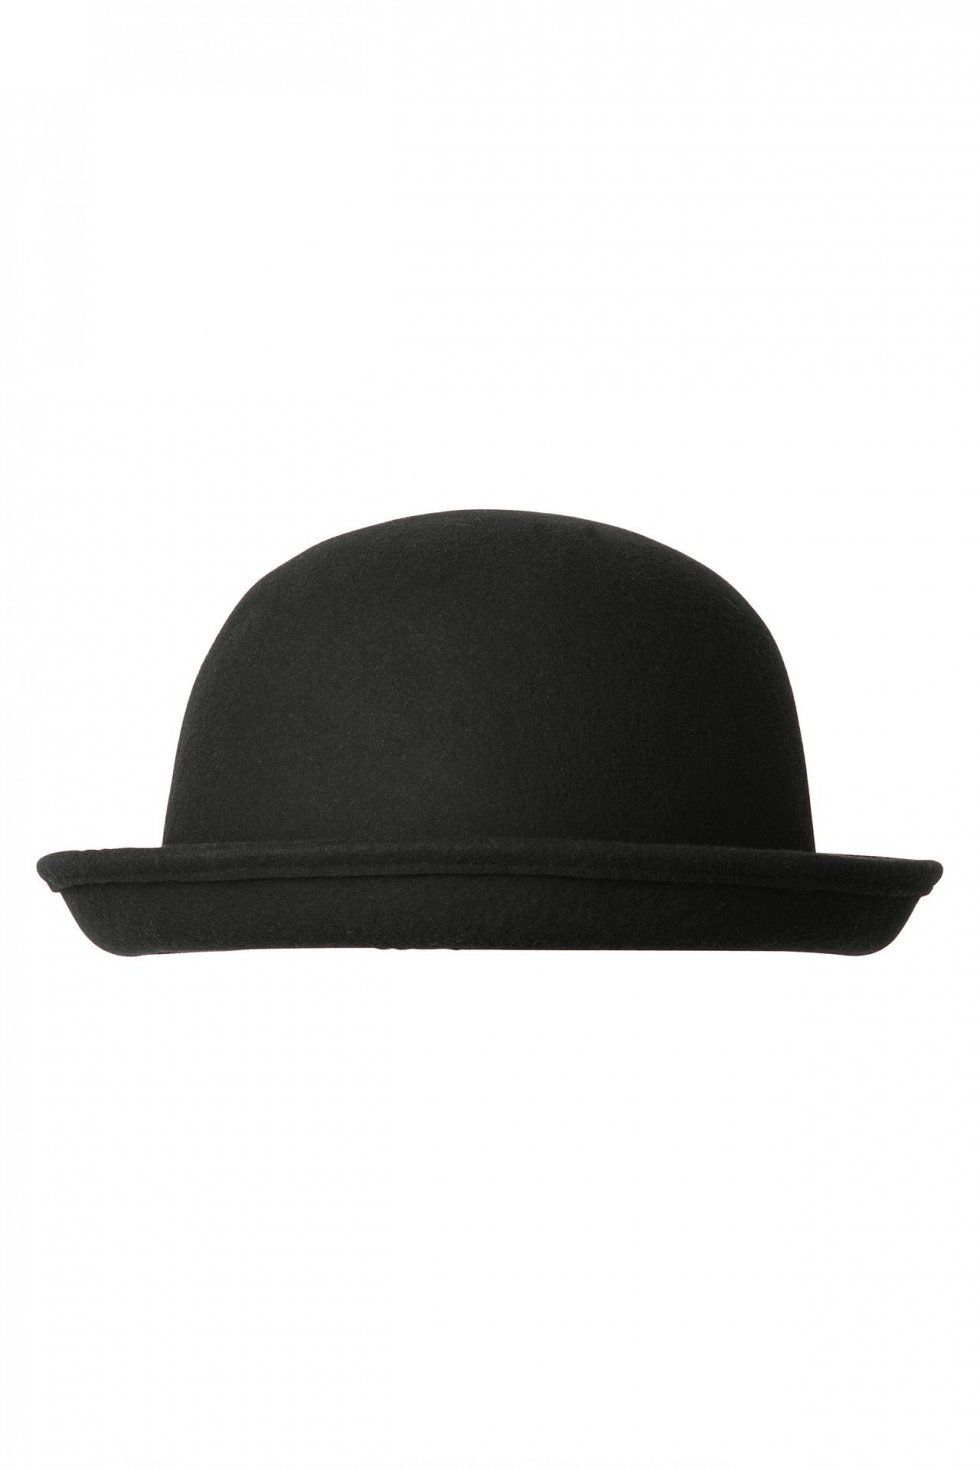 Bowler inspireret hat fra Monki - Pressebillede - Accessory-tendens 2012: Hatte